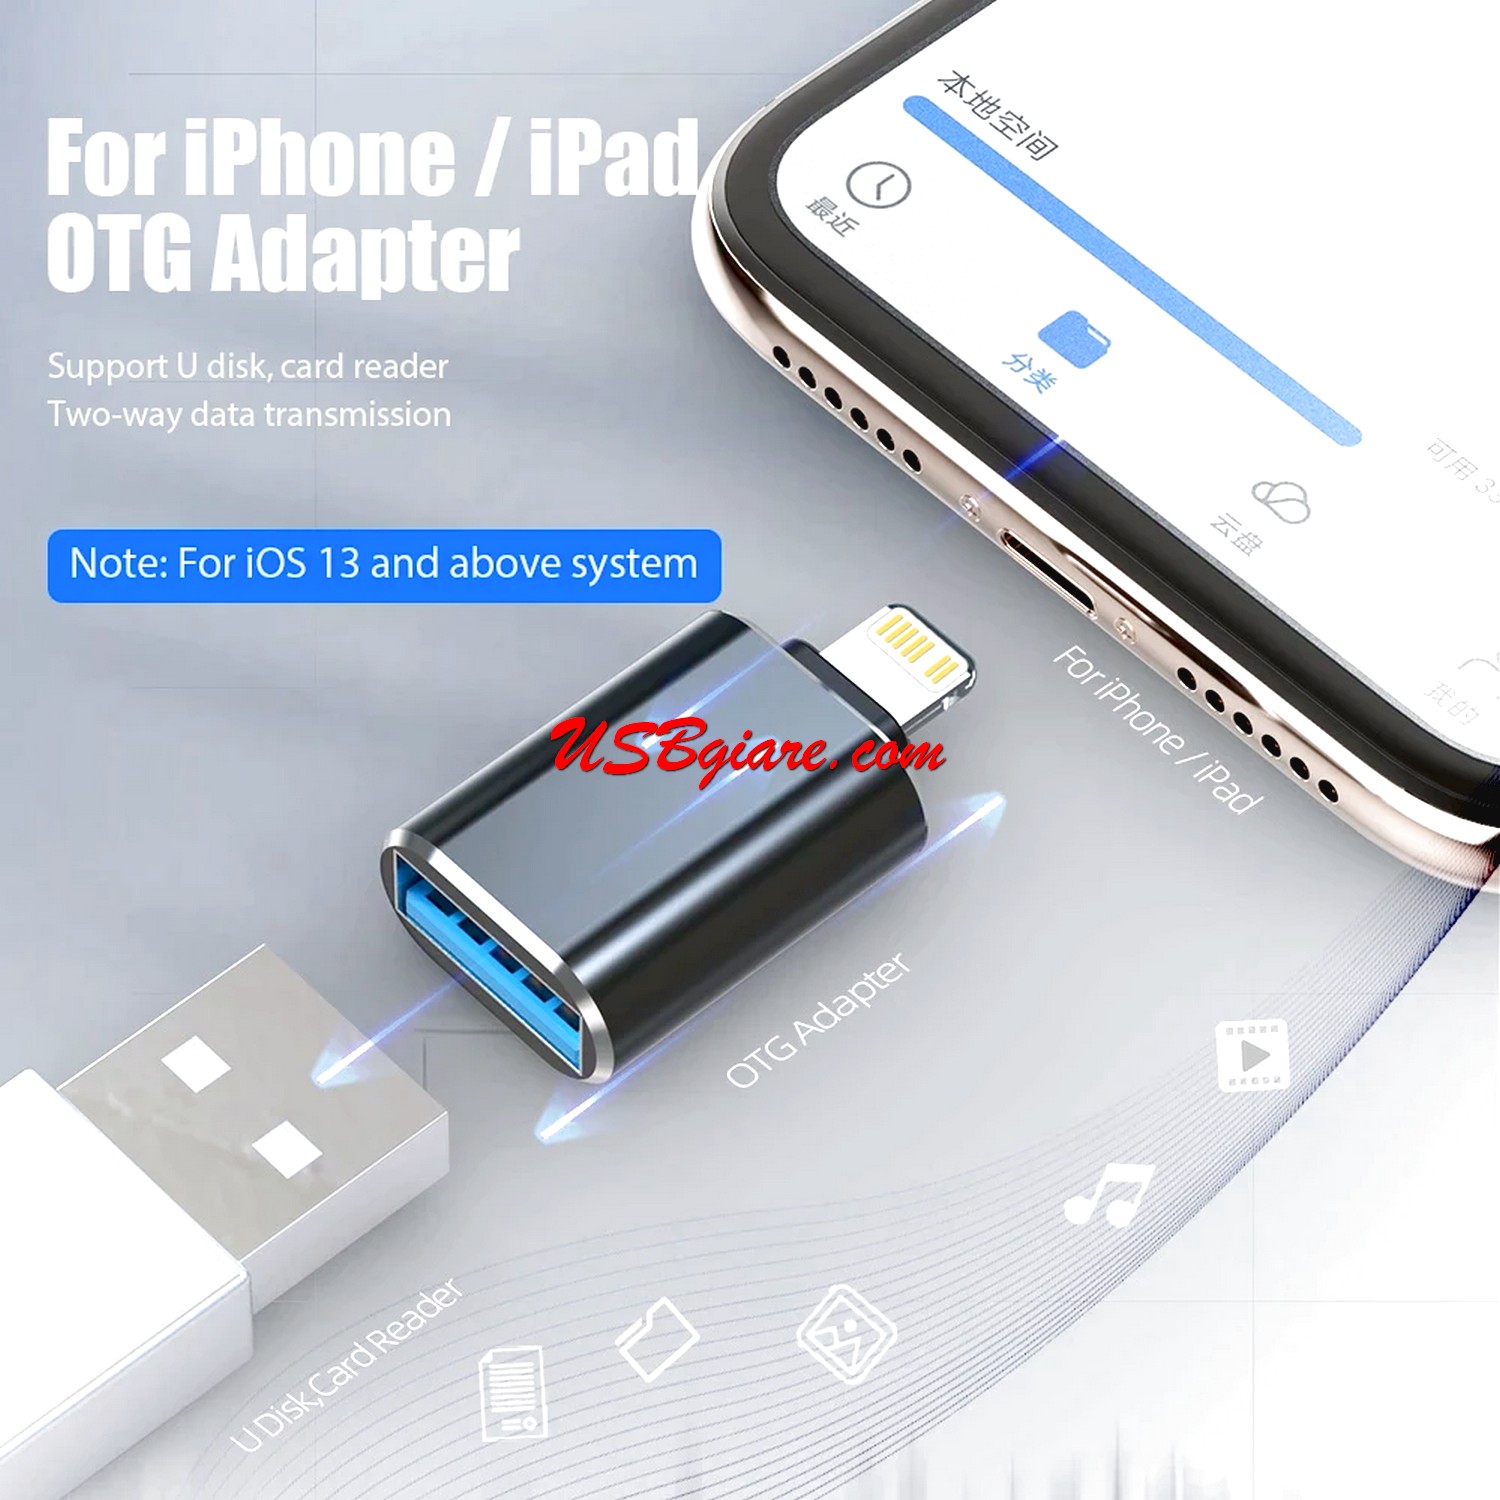 Đầu chuyển đổi OTG Light.ning sang USB3.0 cho iPhone iPad kết nối chuột bàn phím 【USBgiare,Com】